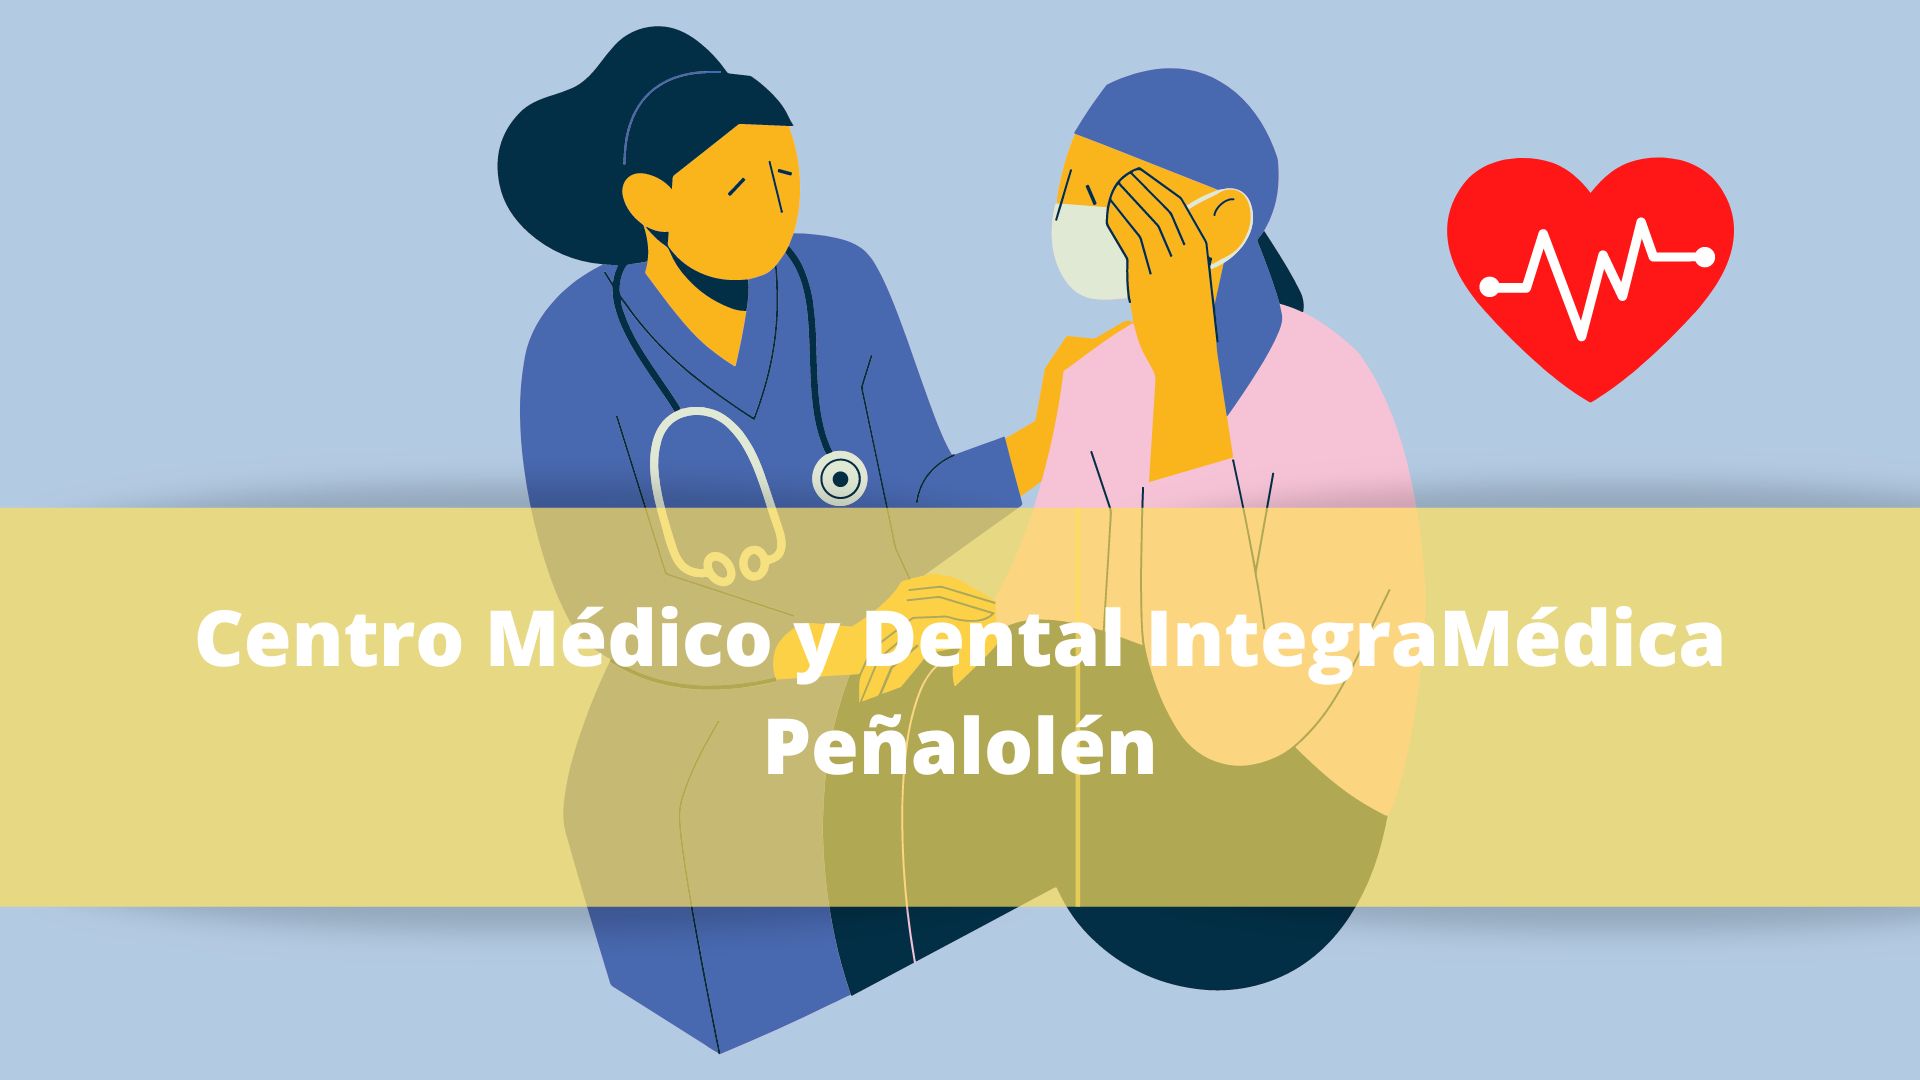 Centro Médico y Dental IntegraMédica Peñalolén